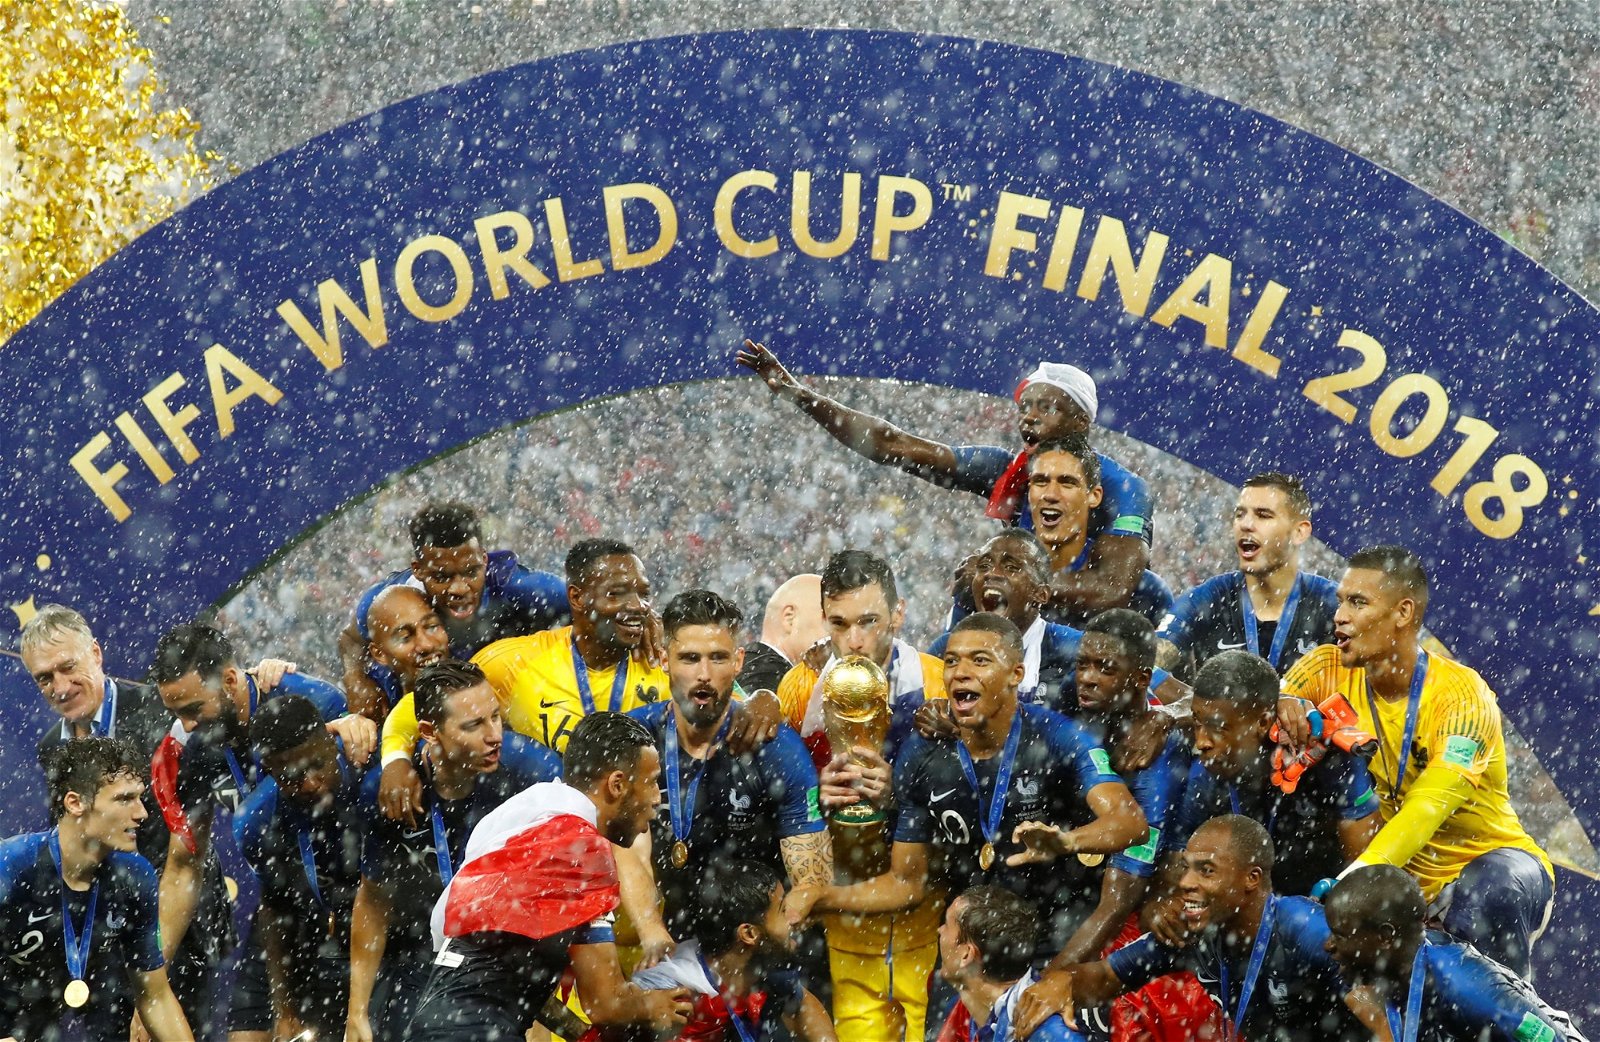 法国成功拿下克罗地亚夺得2018俄罗斯世界杯冠军，惟早前下注的赌客却面对赌球集 团卷款潜逃，而无法取得奖金的窘境。